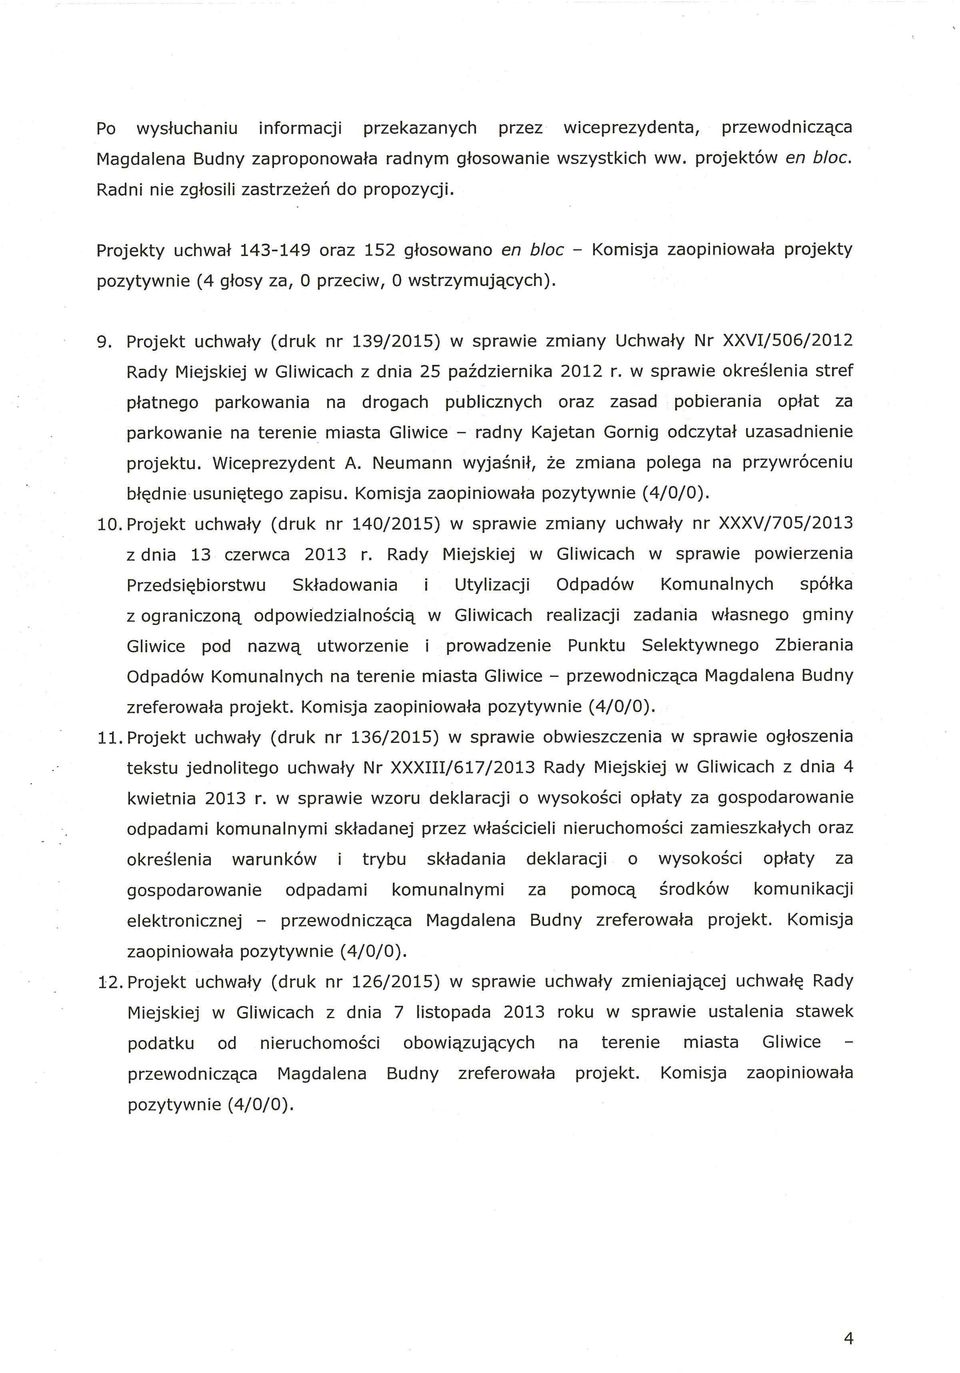 Projekt uchwały (druk nr 139/2015) W sprawie zmiany Uchwały Nr XXV/506/2012 Rady Miejskiej W Gliwicach z dnia 25 października 2012 r.